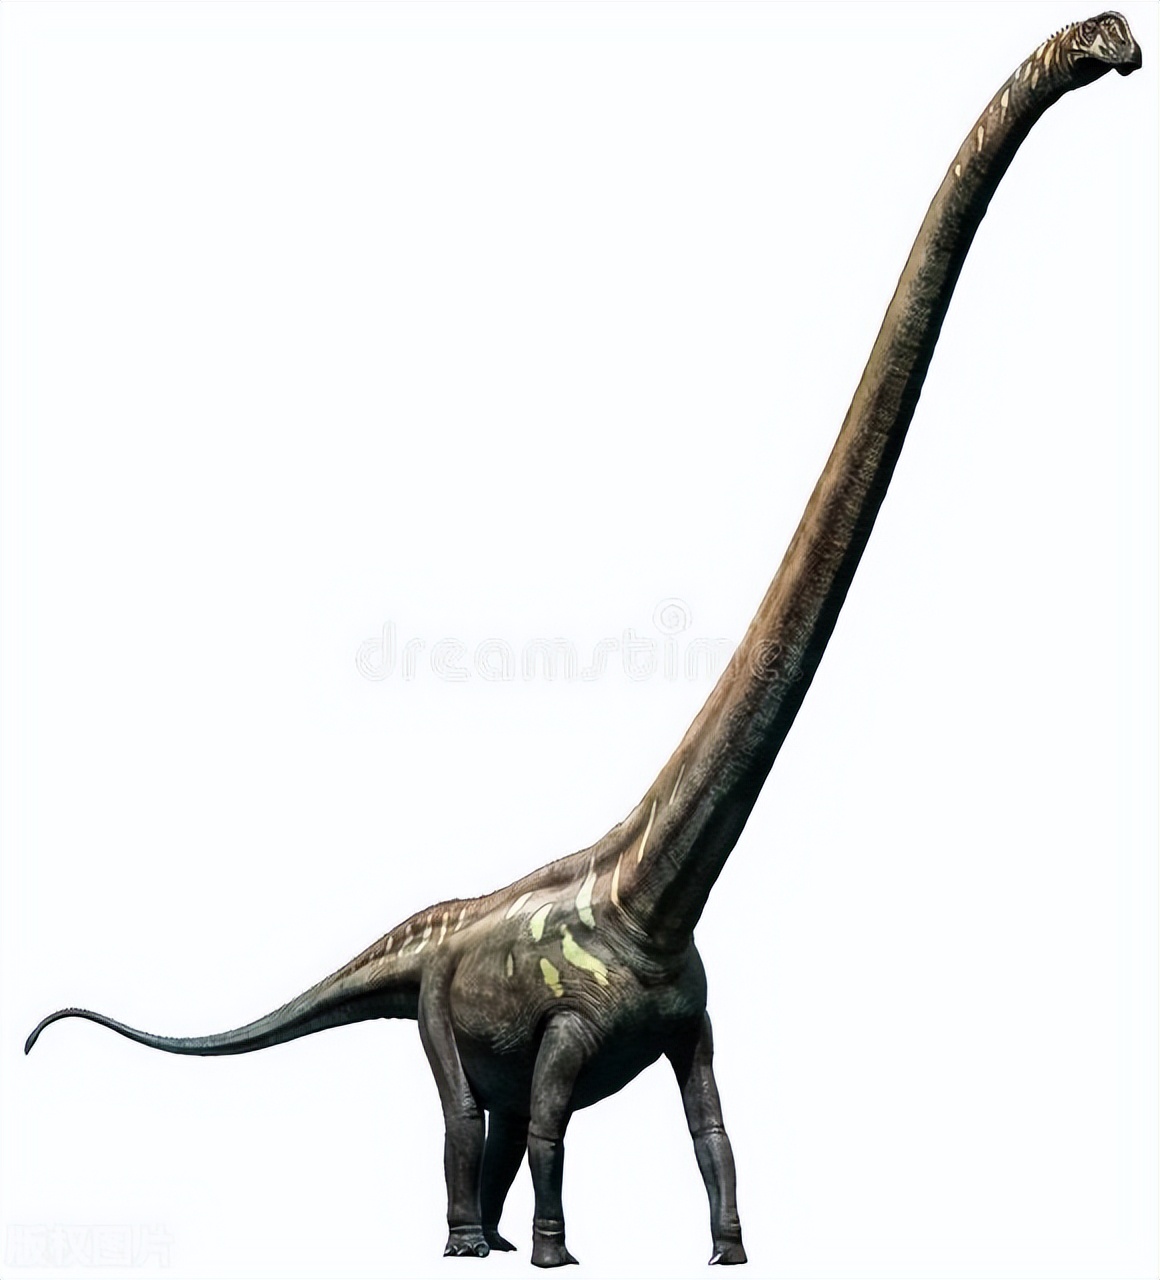 脖子最长的恐龙图片